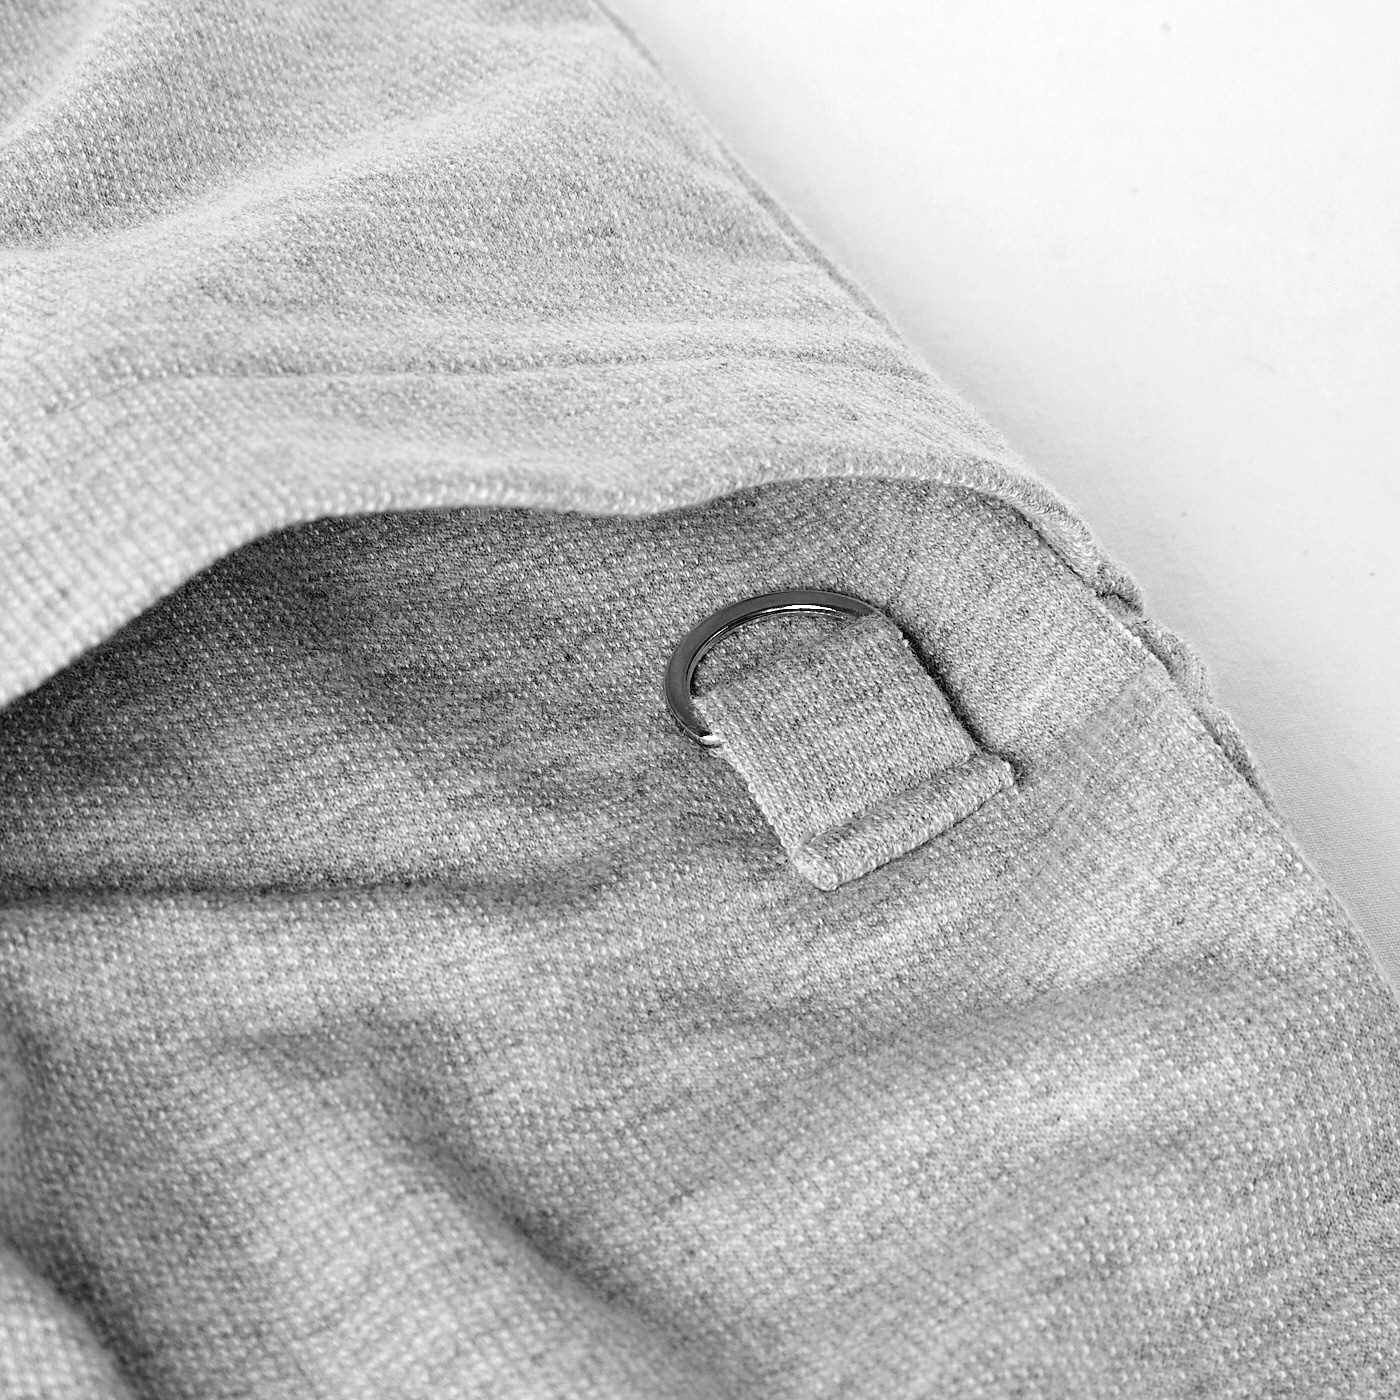 Real Stock|UP.de　着られるバッグ Tシャツ感覚なのにきれい見えする ポケットいっぱい てぶらなカットソースキッパーシャツ〈オフホワイト〉|前ポケットにはDカン付き。お届けするカラーとは異なります。